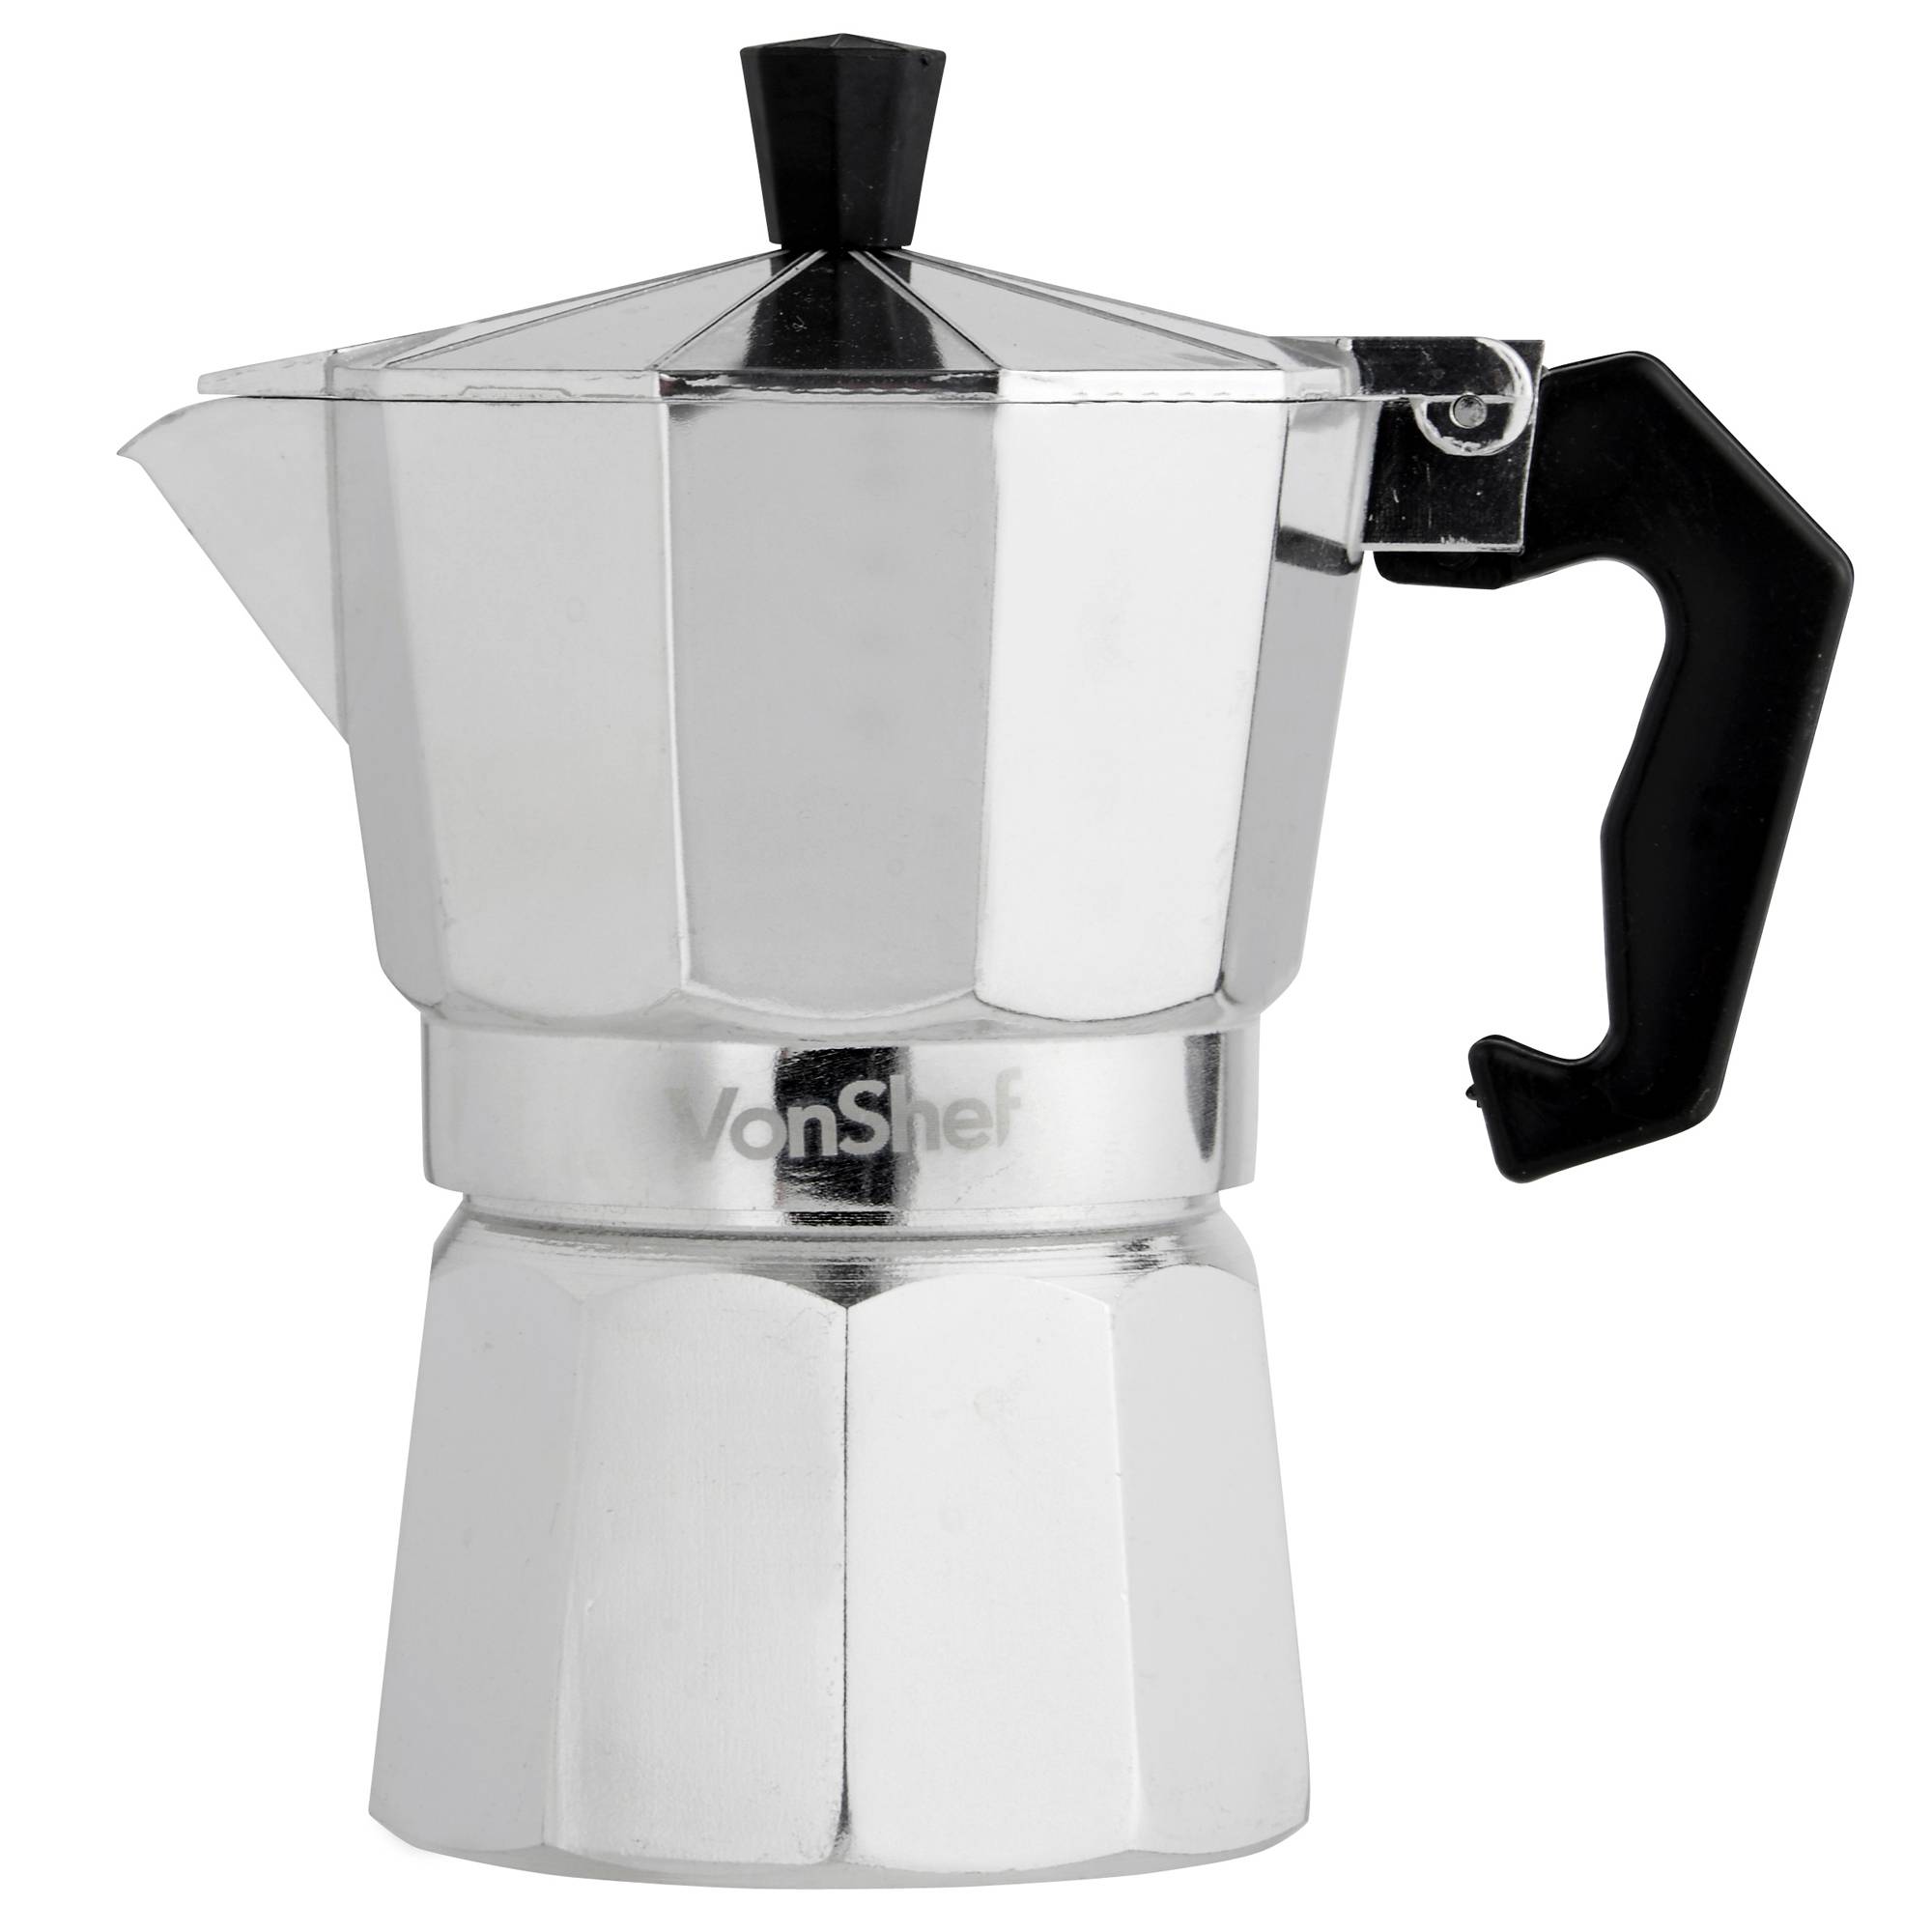 Как приготовить кофе на кухонной плите с помощью перколятора